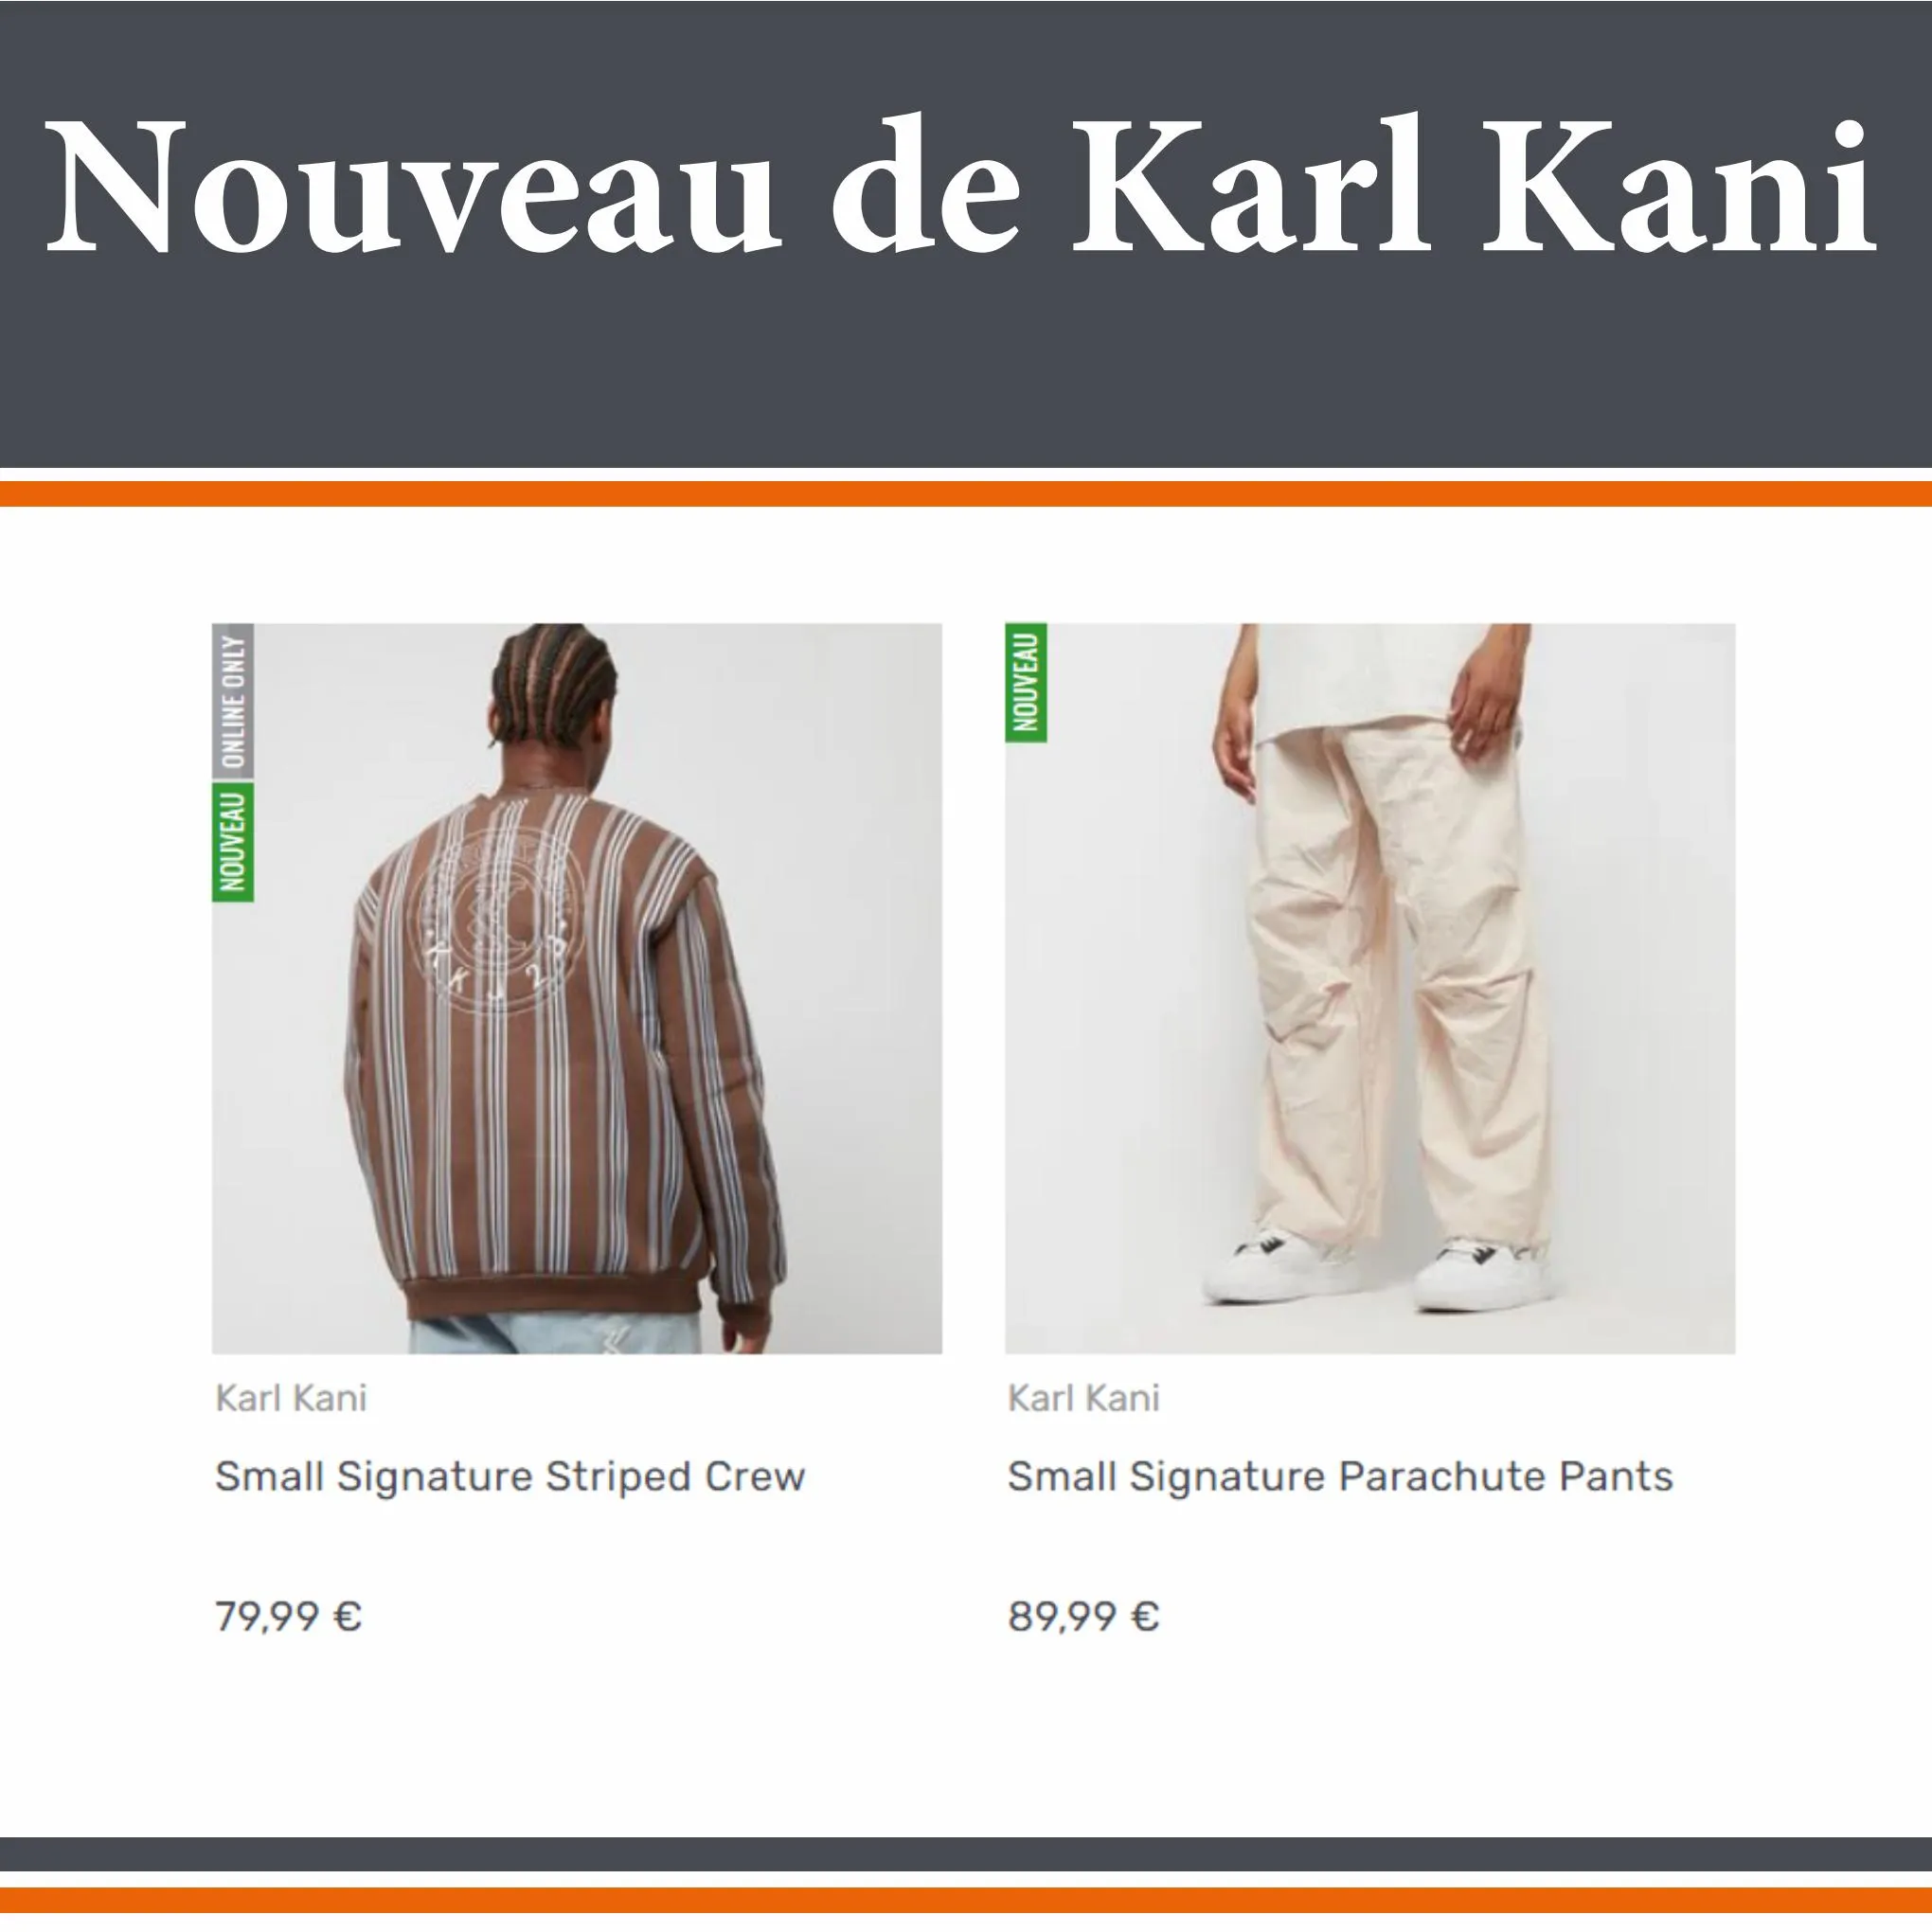 Catalogue Snipes Nouveau de Karl Kani, page 00005